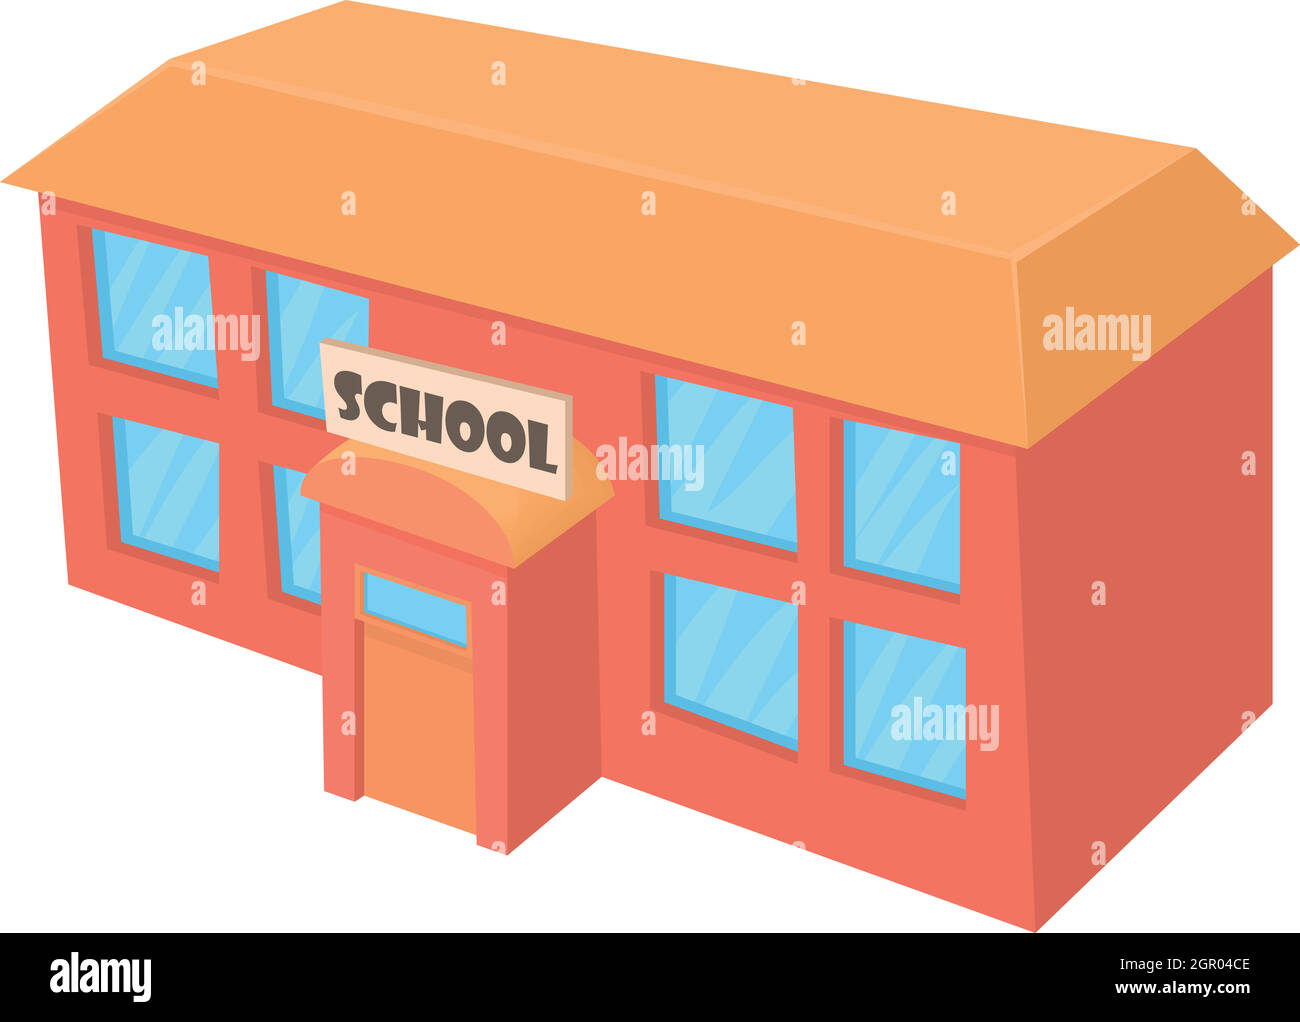 School building icon, cartoon style Stock Vector